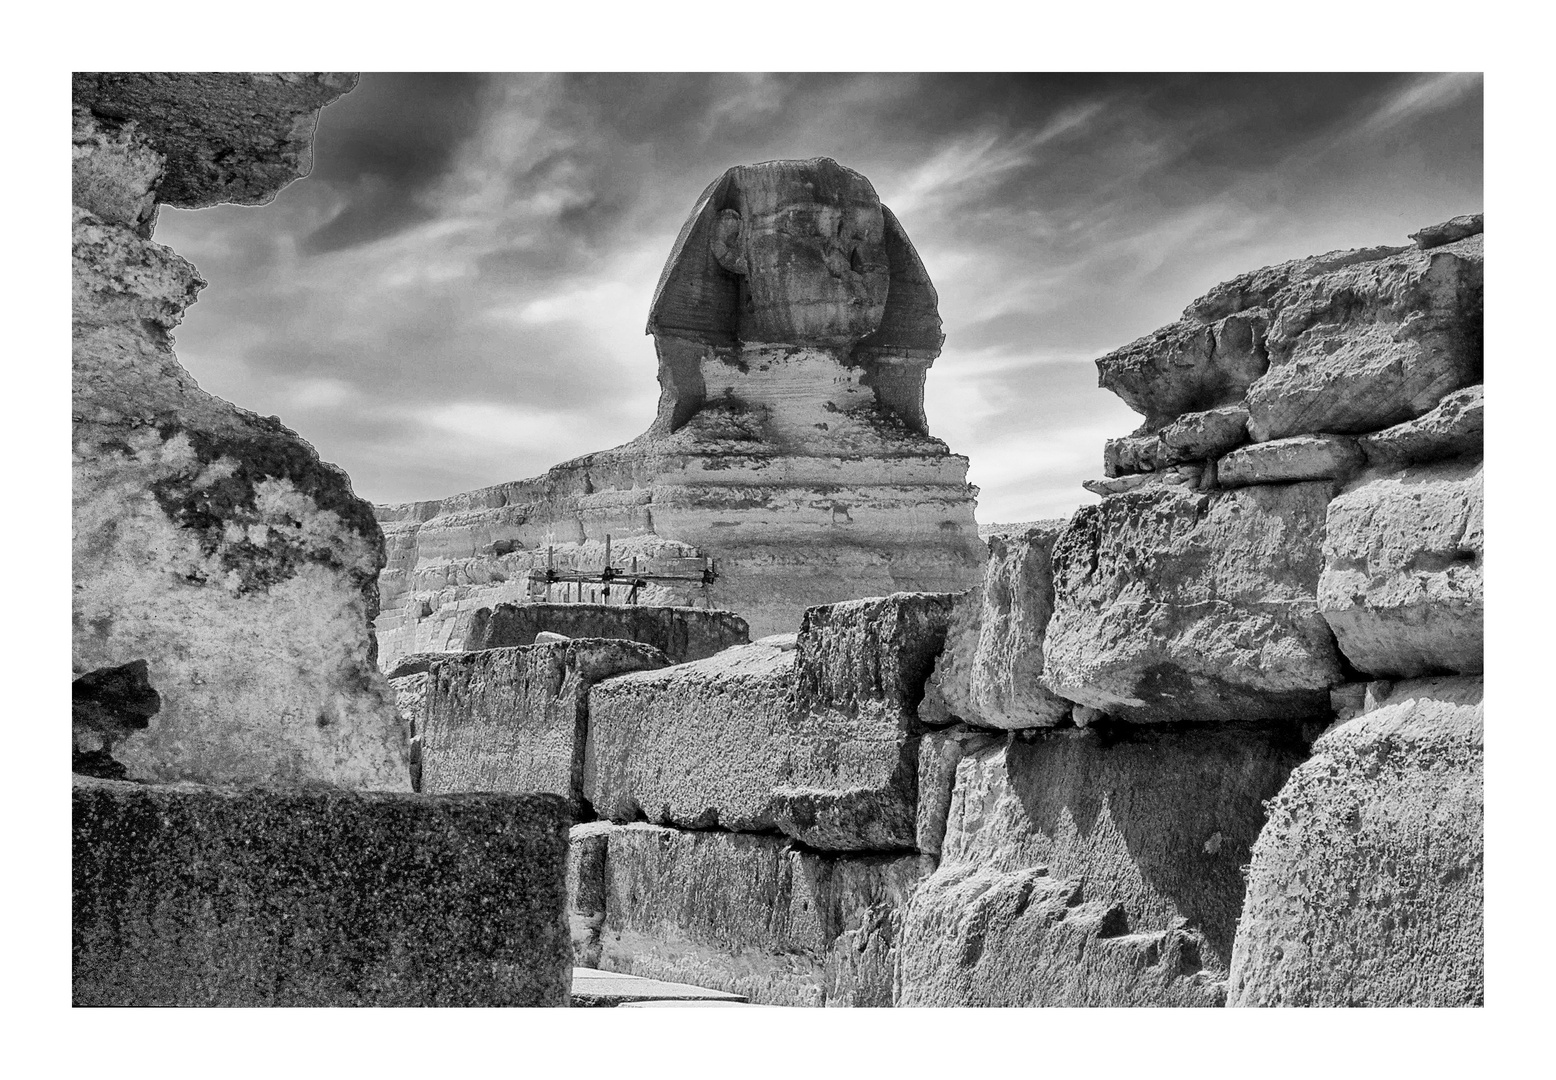 Die (auch der) Große Sphinx von Gizeh